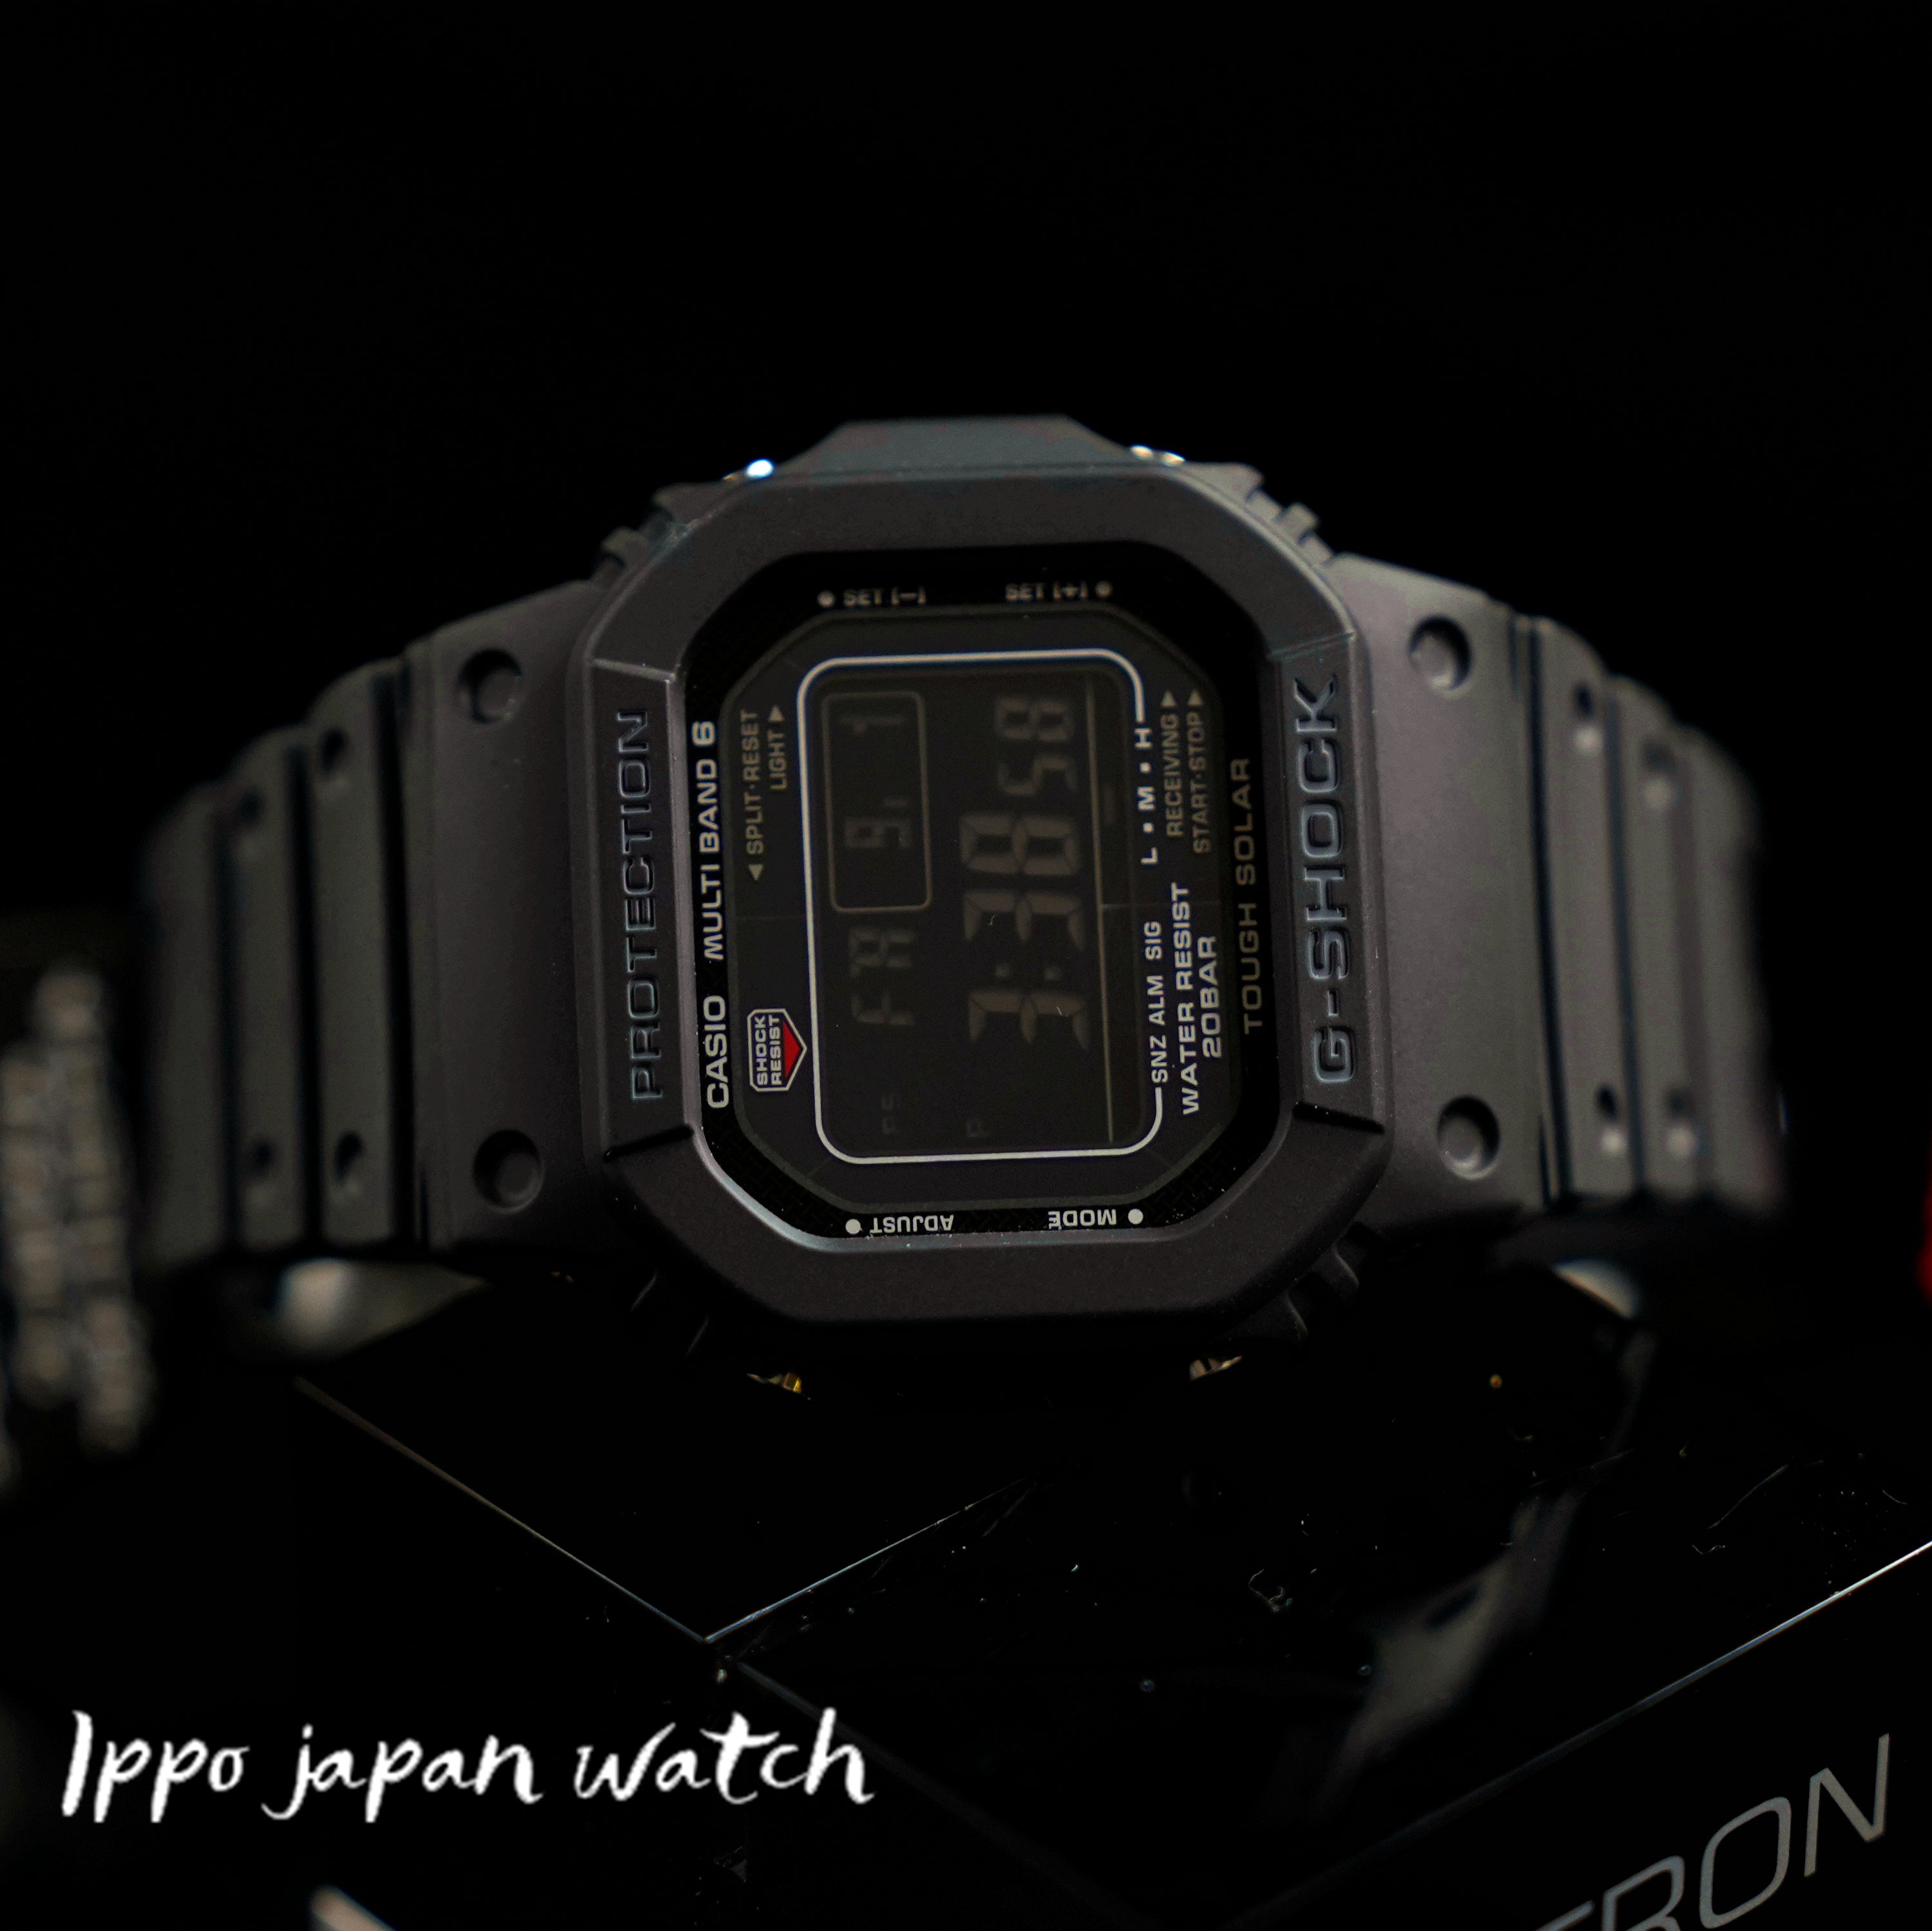 CASIO G-SHOCK GW-M5610U-1BJF GW-M5610U-1 Solar 20 bar watch - IPPO JAPAN WATCH 